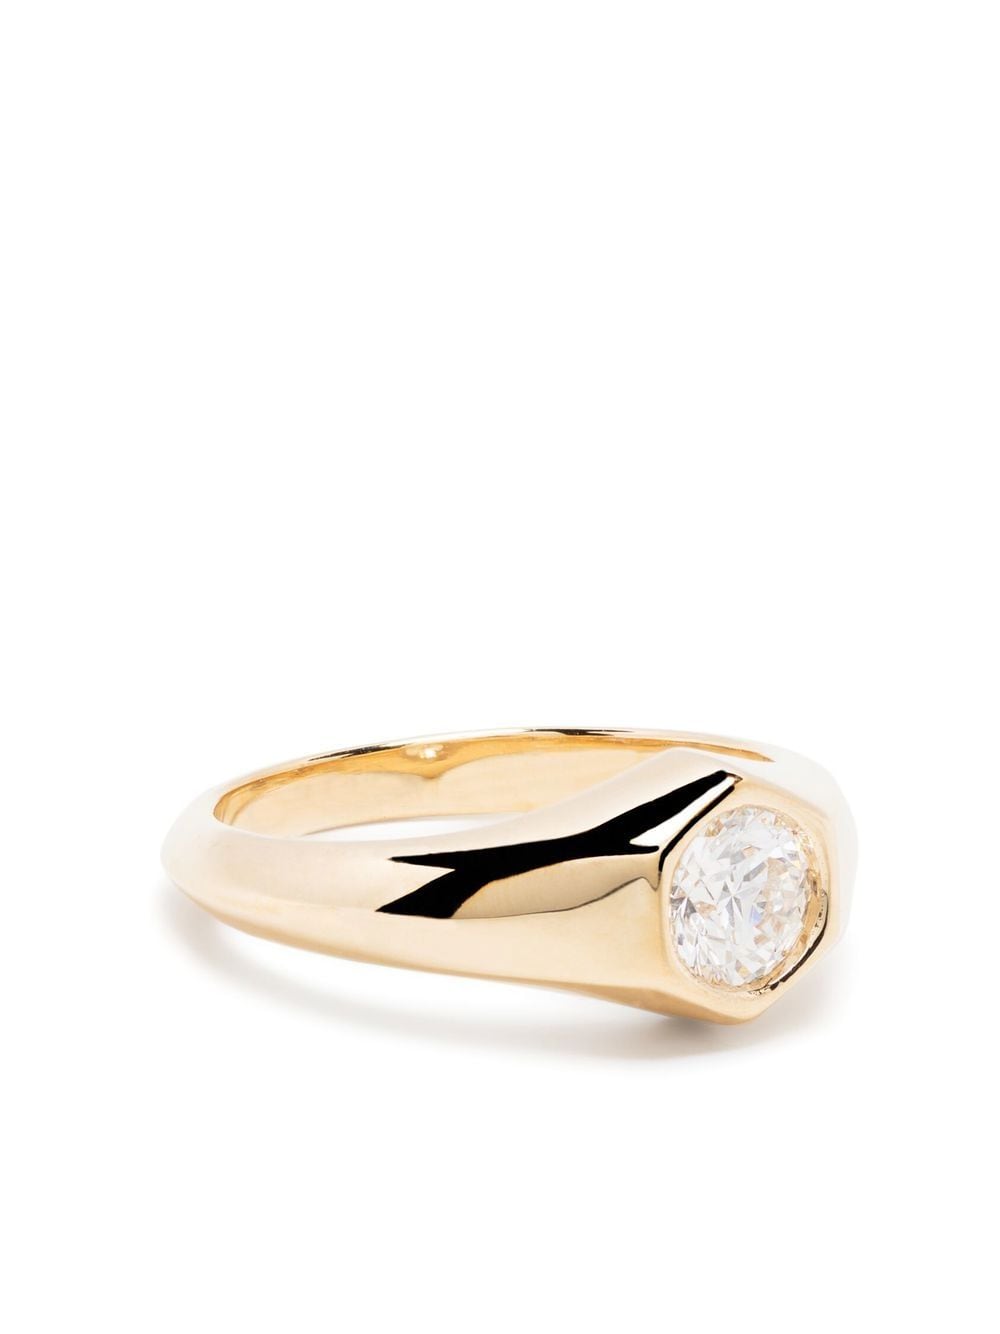 Lizzie Mandler Fine Jewelry 18kt yellow gold Knife Edge diamond signet ring von Lizzie Mandler Fine Jewelry